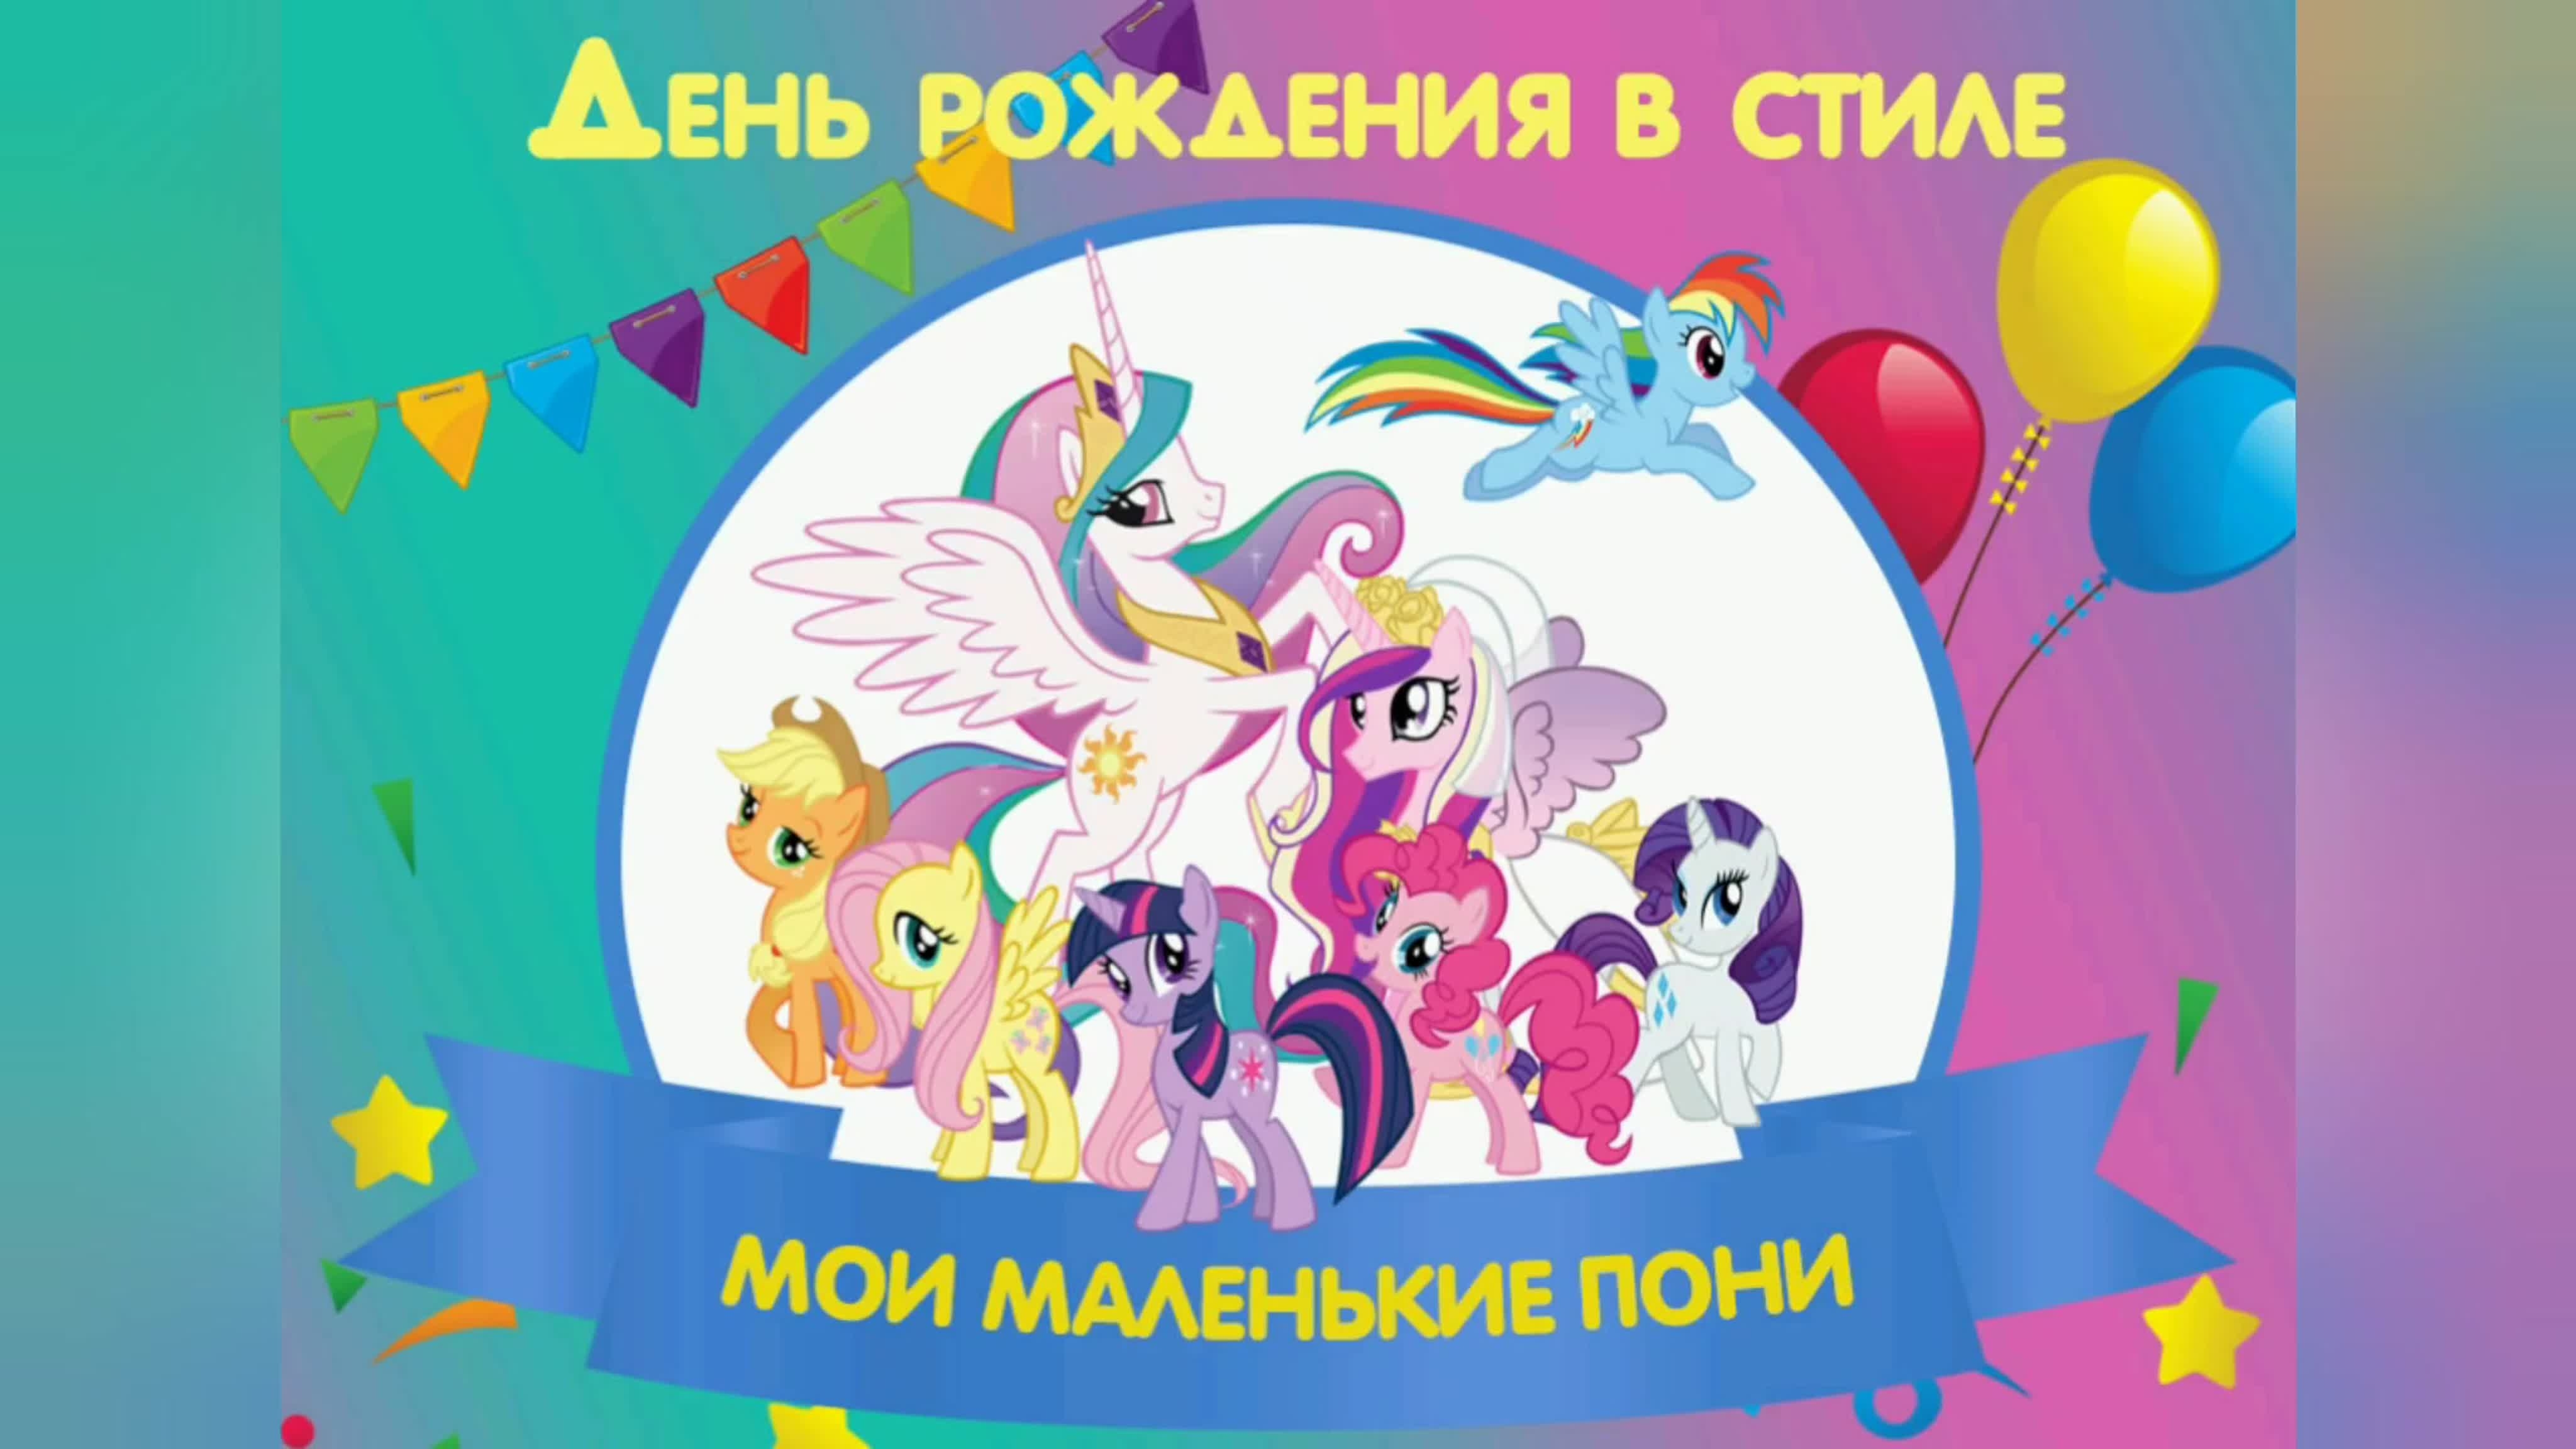 Май литл пони день рождения. My little Pony с днем рождения. Плакат на день рождения пони. С днём рождения мой маленький пони. День рождения в стиле мой маленький пони.